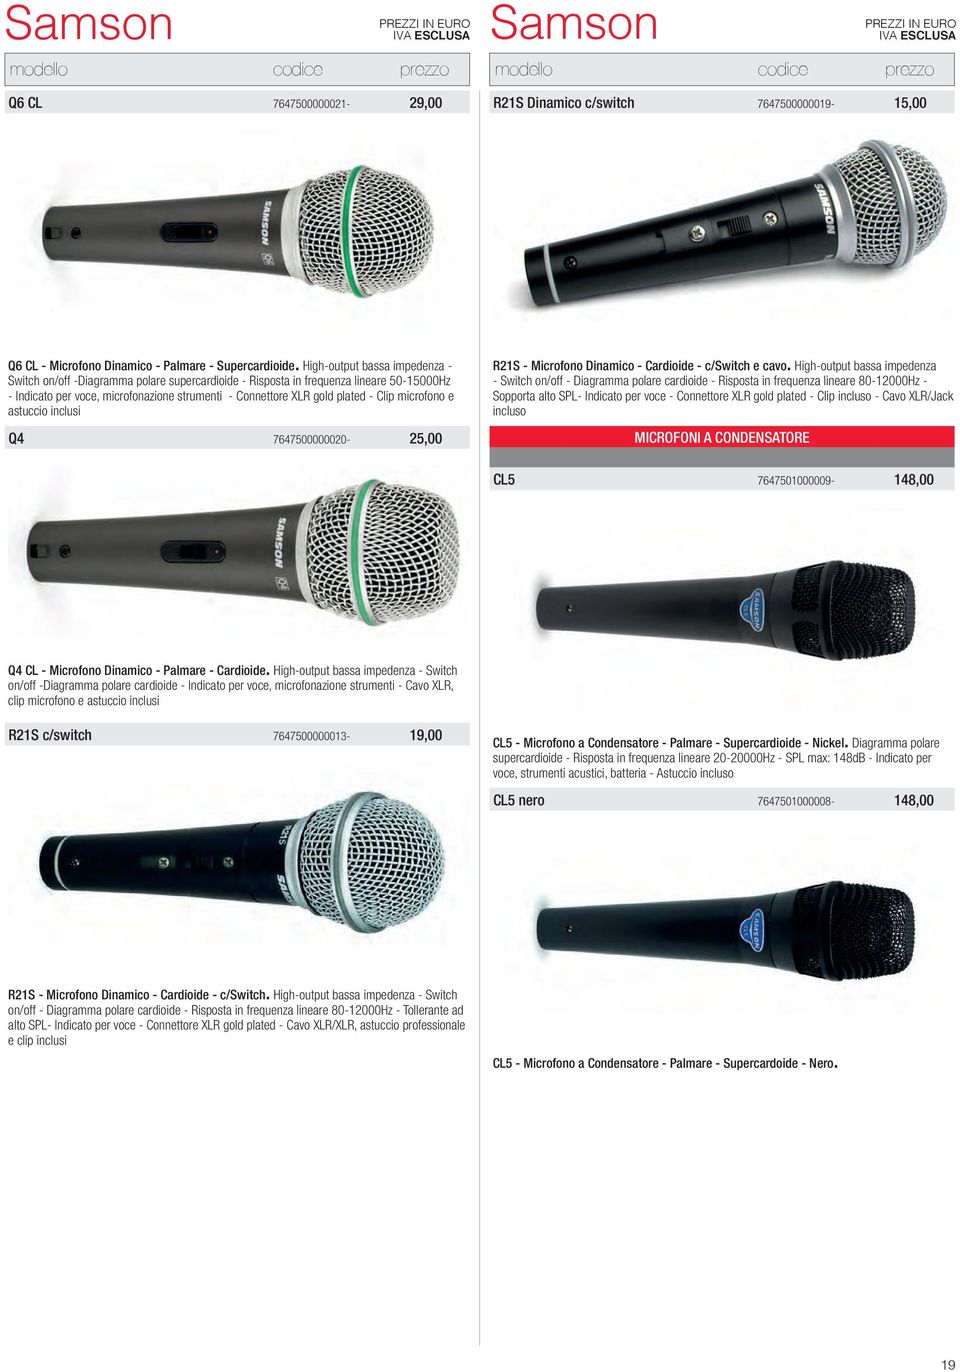 Clip microfono e astuccio inclusi Q4 7647500000020-25,00 R21S - Microfono Dinamico - Cardioide - c/switch e cavo.